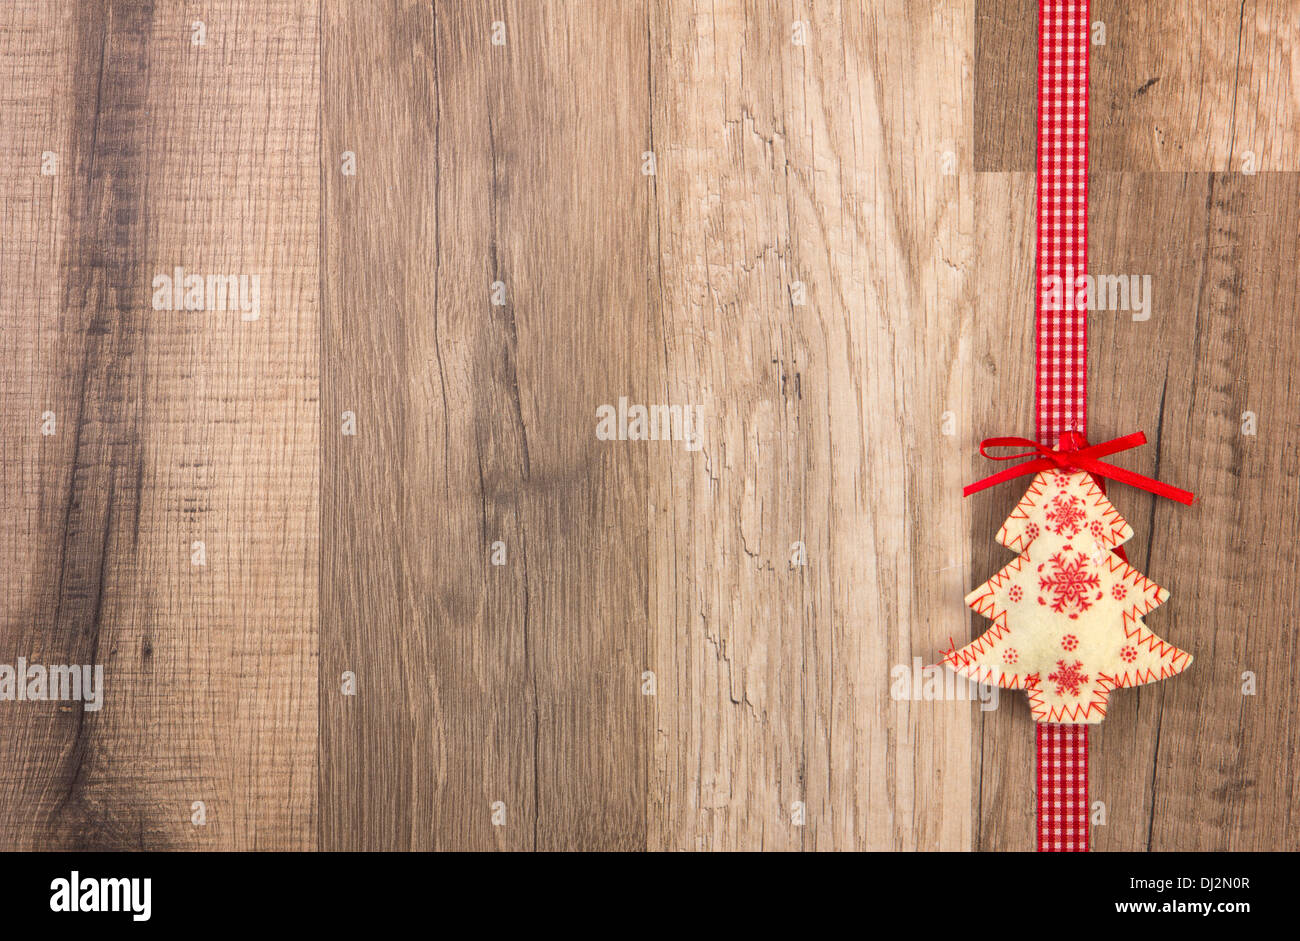 Weihnachts-Dekoration mit Holz Hintergrund, Weihnachtsbaum rot mit Schleife Stockfoto